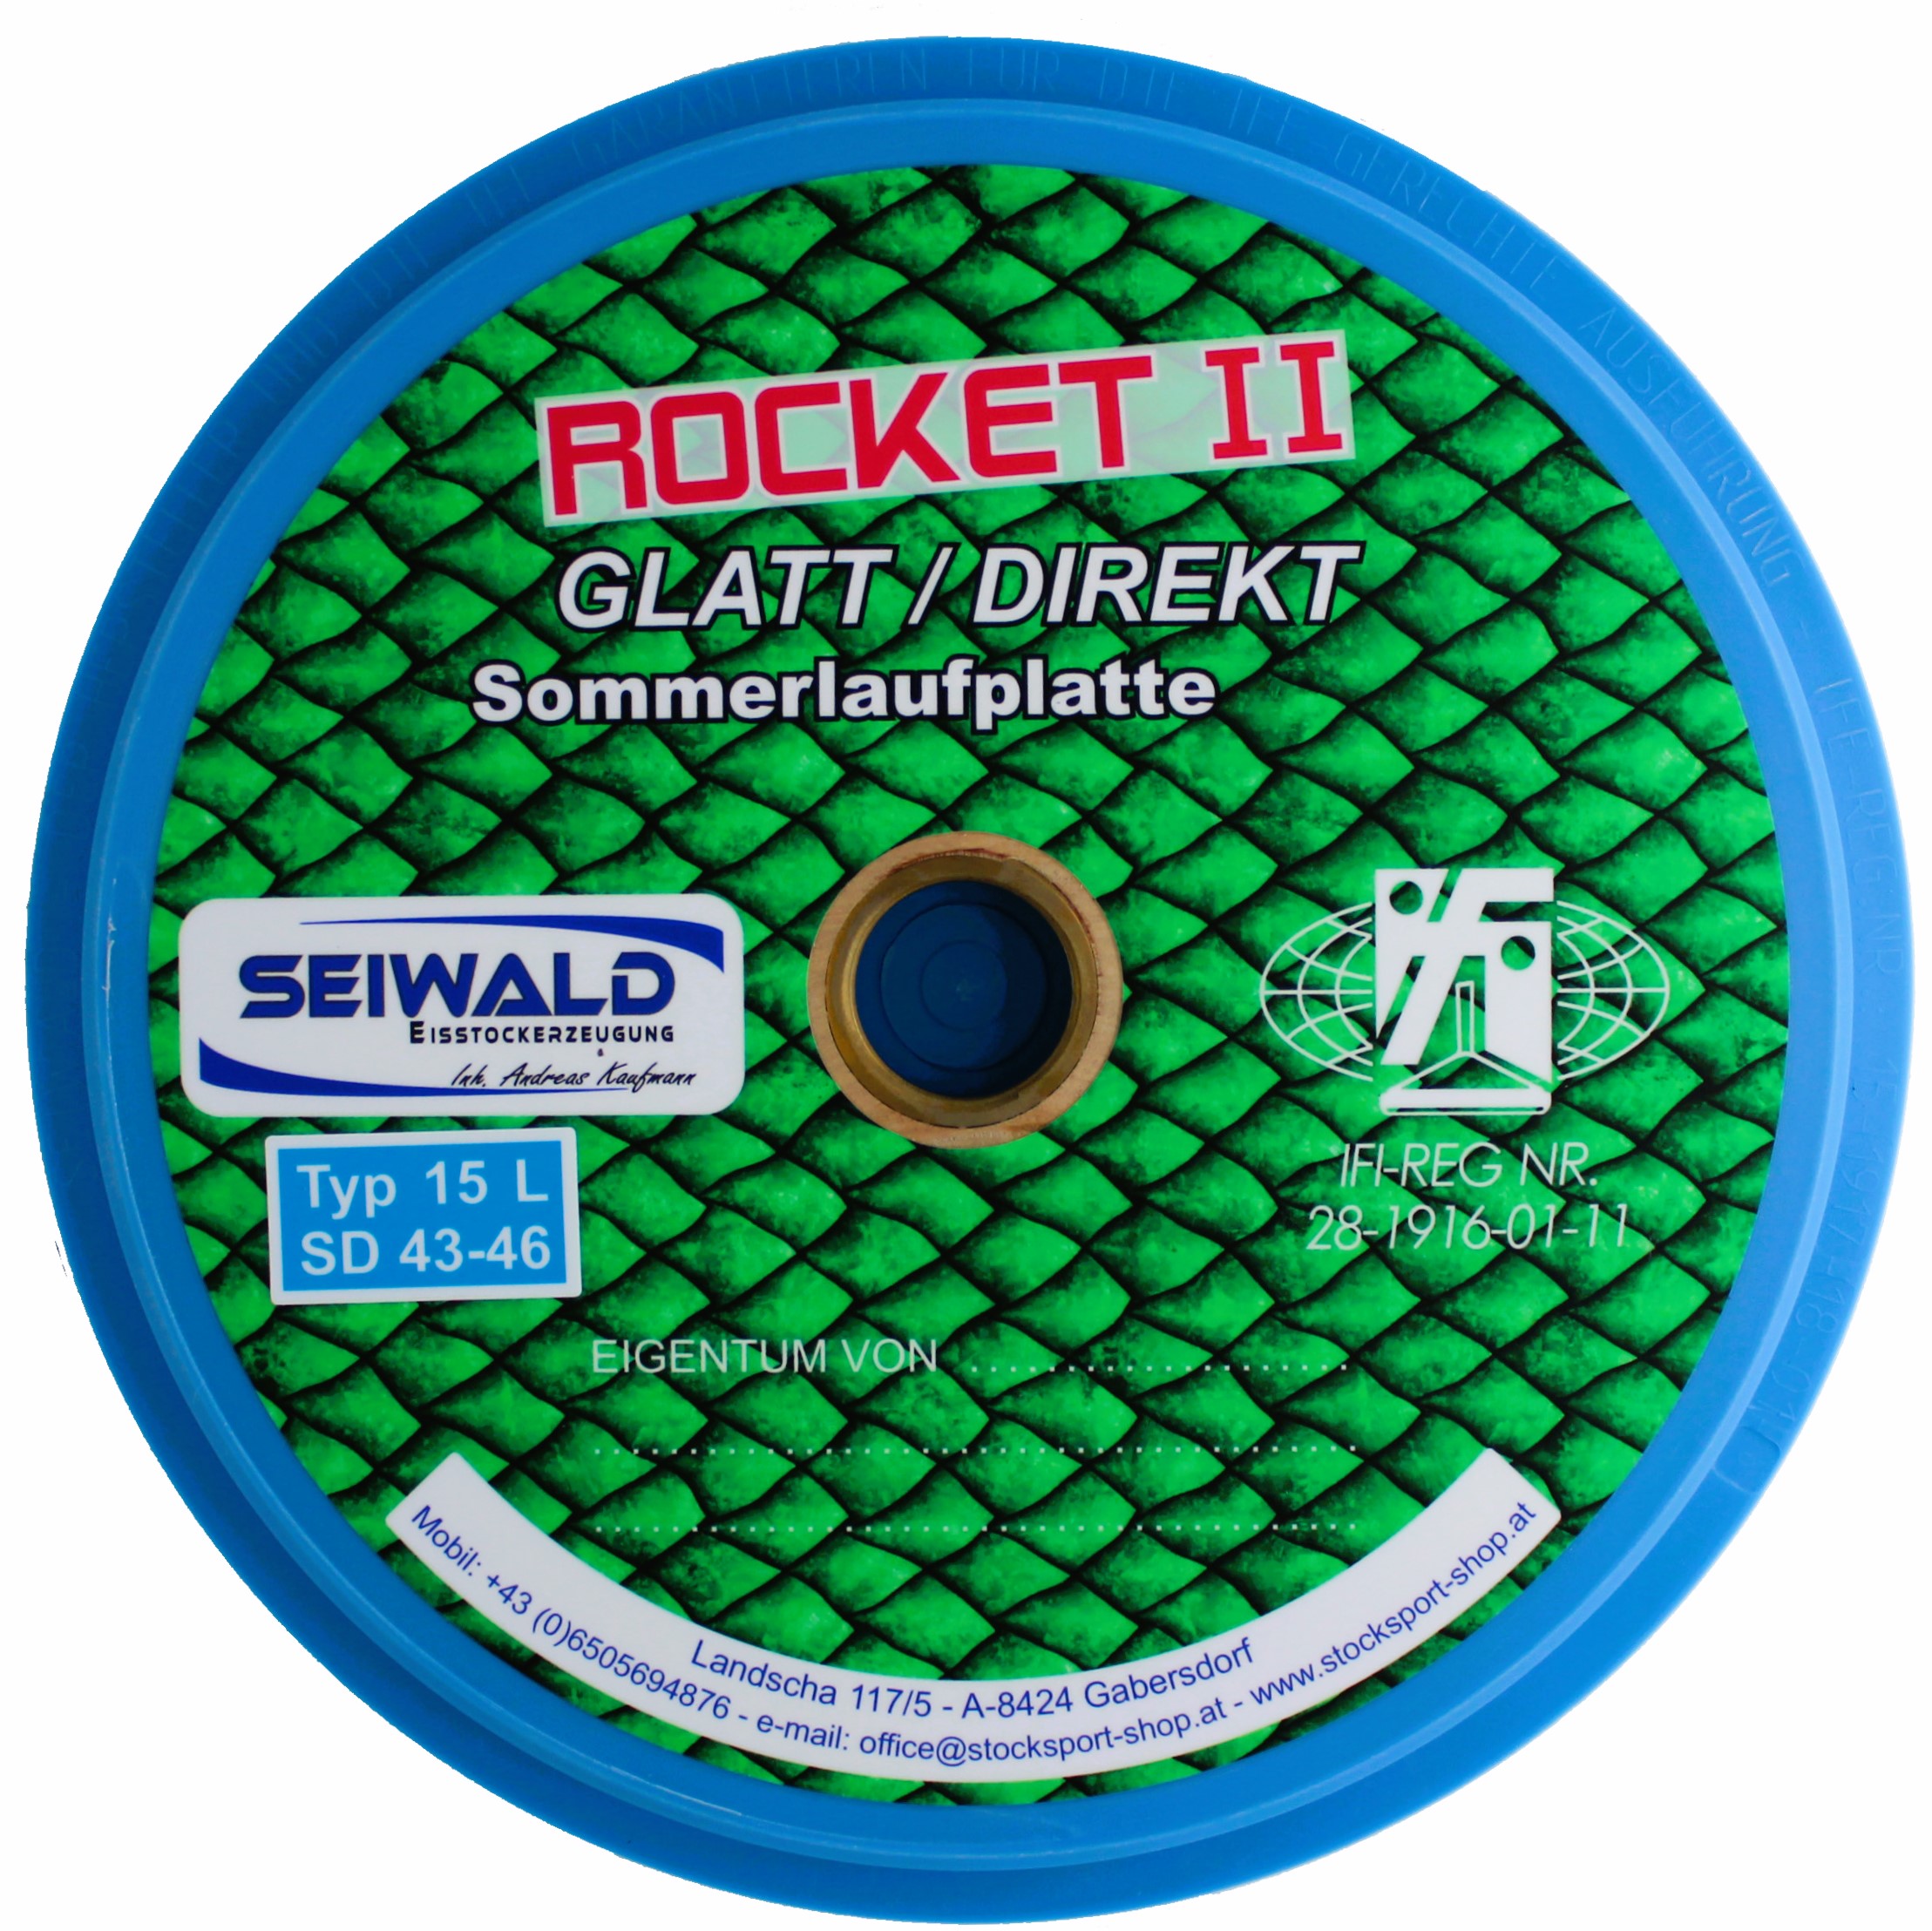 SEIWALD Rocket II Glatt / Sehr schnelle Stockplatte